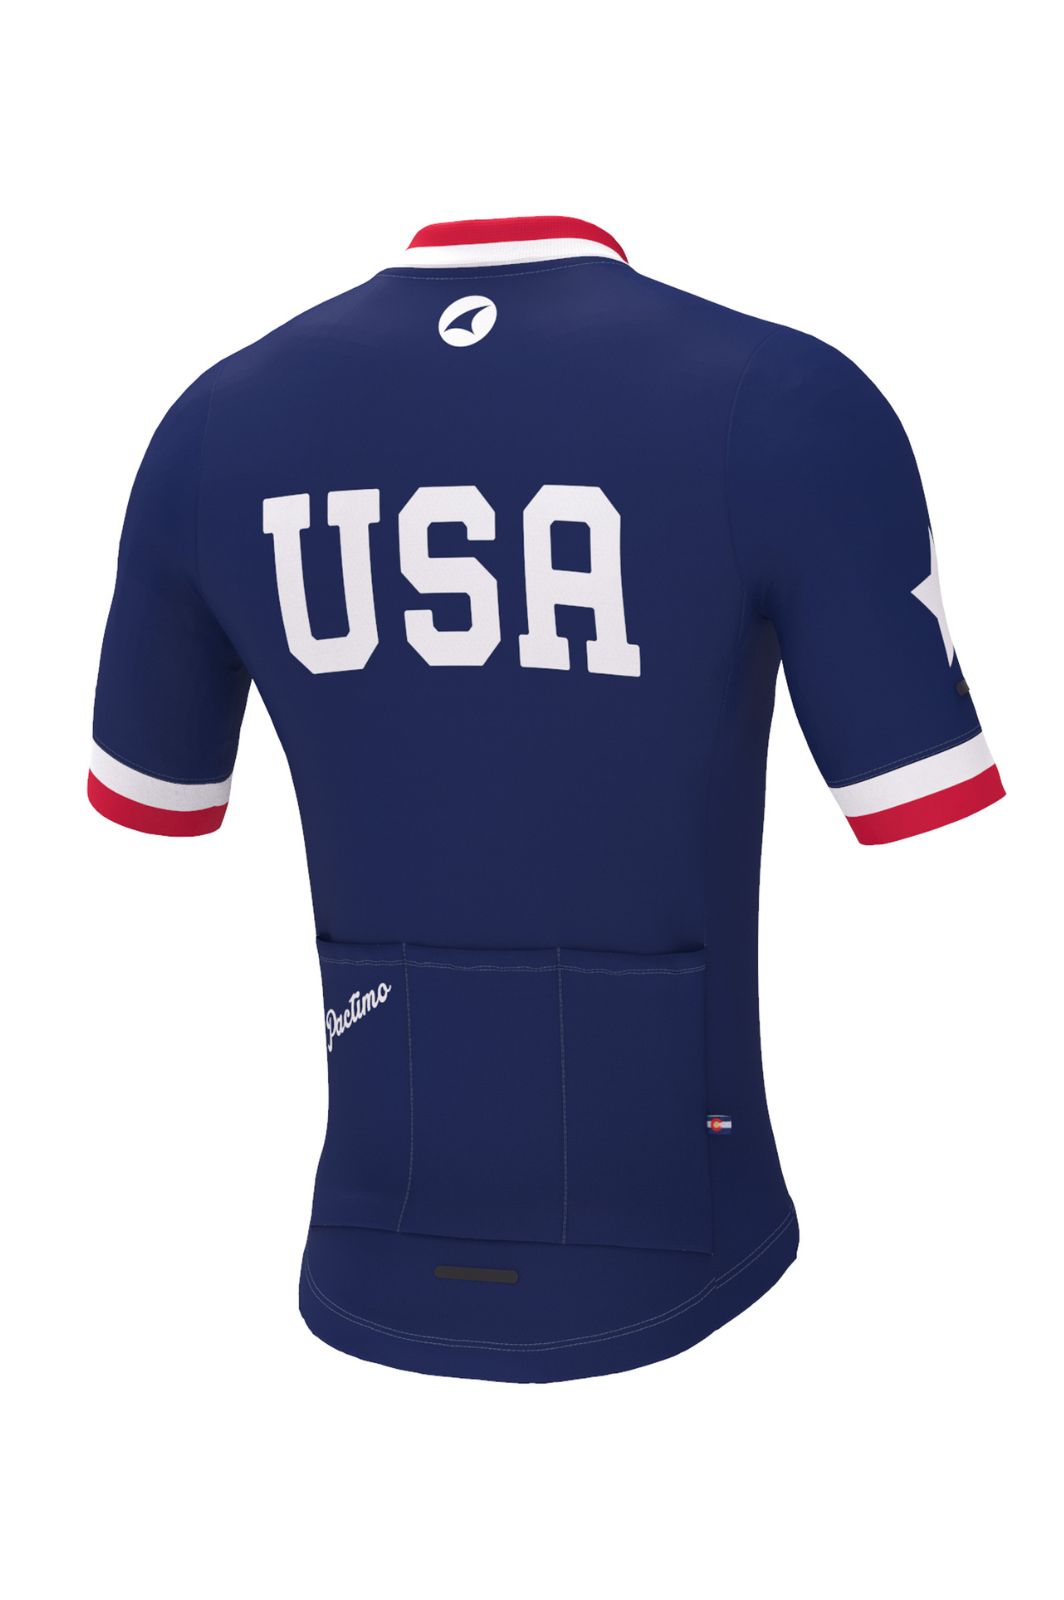 Men's Retro USA Cycling Jersey - Ascent Aero Back View